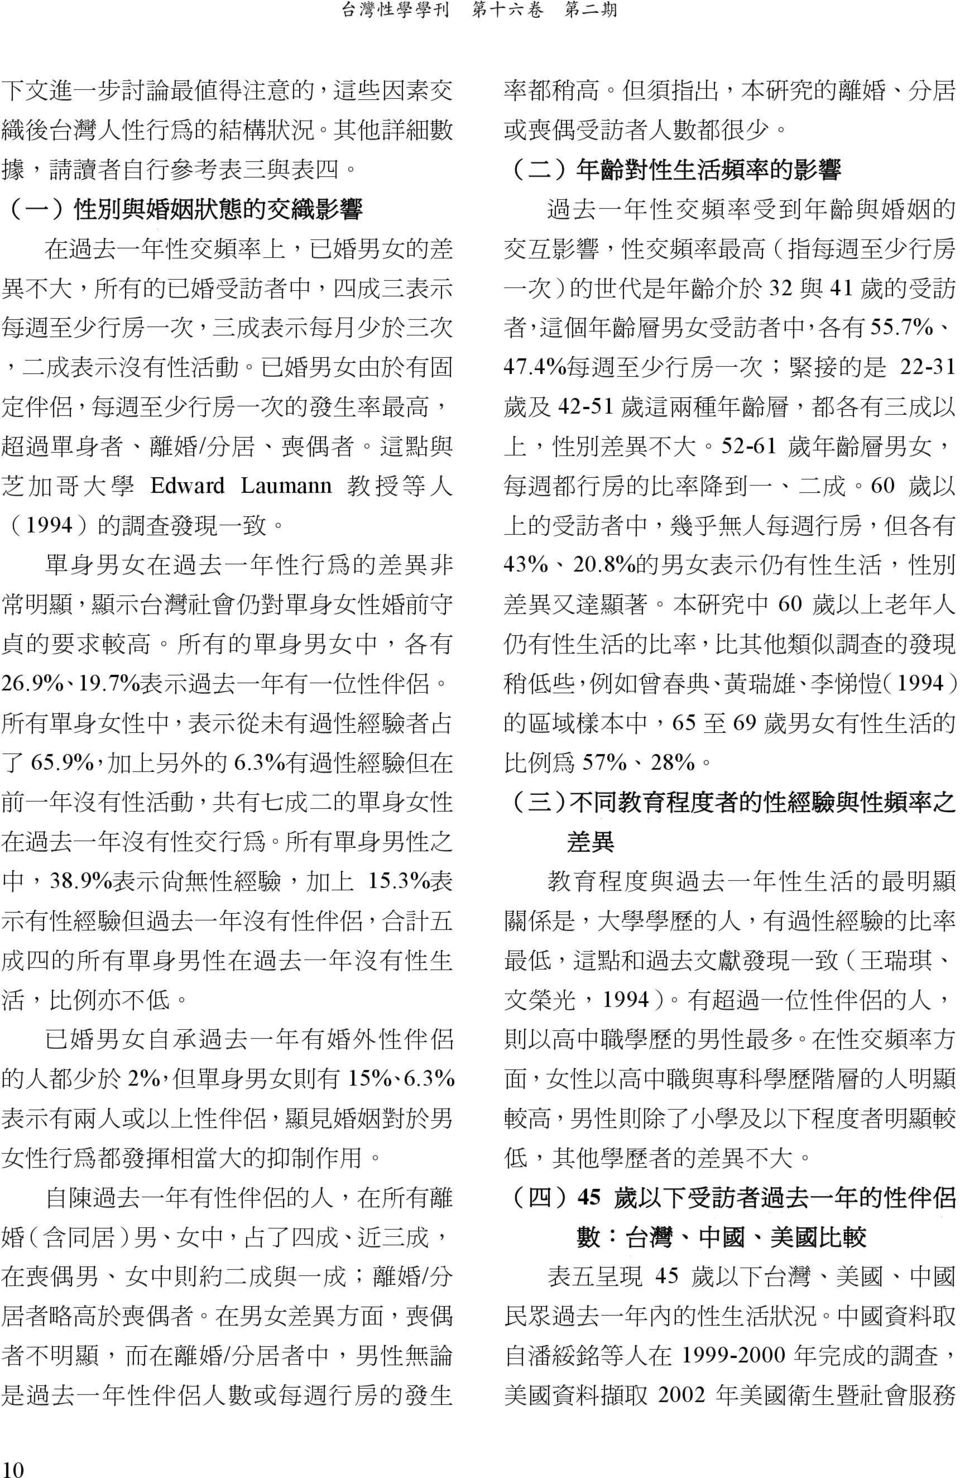 (1994) 的 調 查 發 現 一 致 單 身 男 女 在 過 去 一 年 性 行 為 的 差 異 非 常 明 顯, 顯 示 台 灣 社 會 仍 對 單 身 女 性 婚 前 守 貞 的 要 求 較 高 所 有 的 單 身 男 女 中, 各 有 26.9% 19.